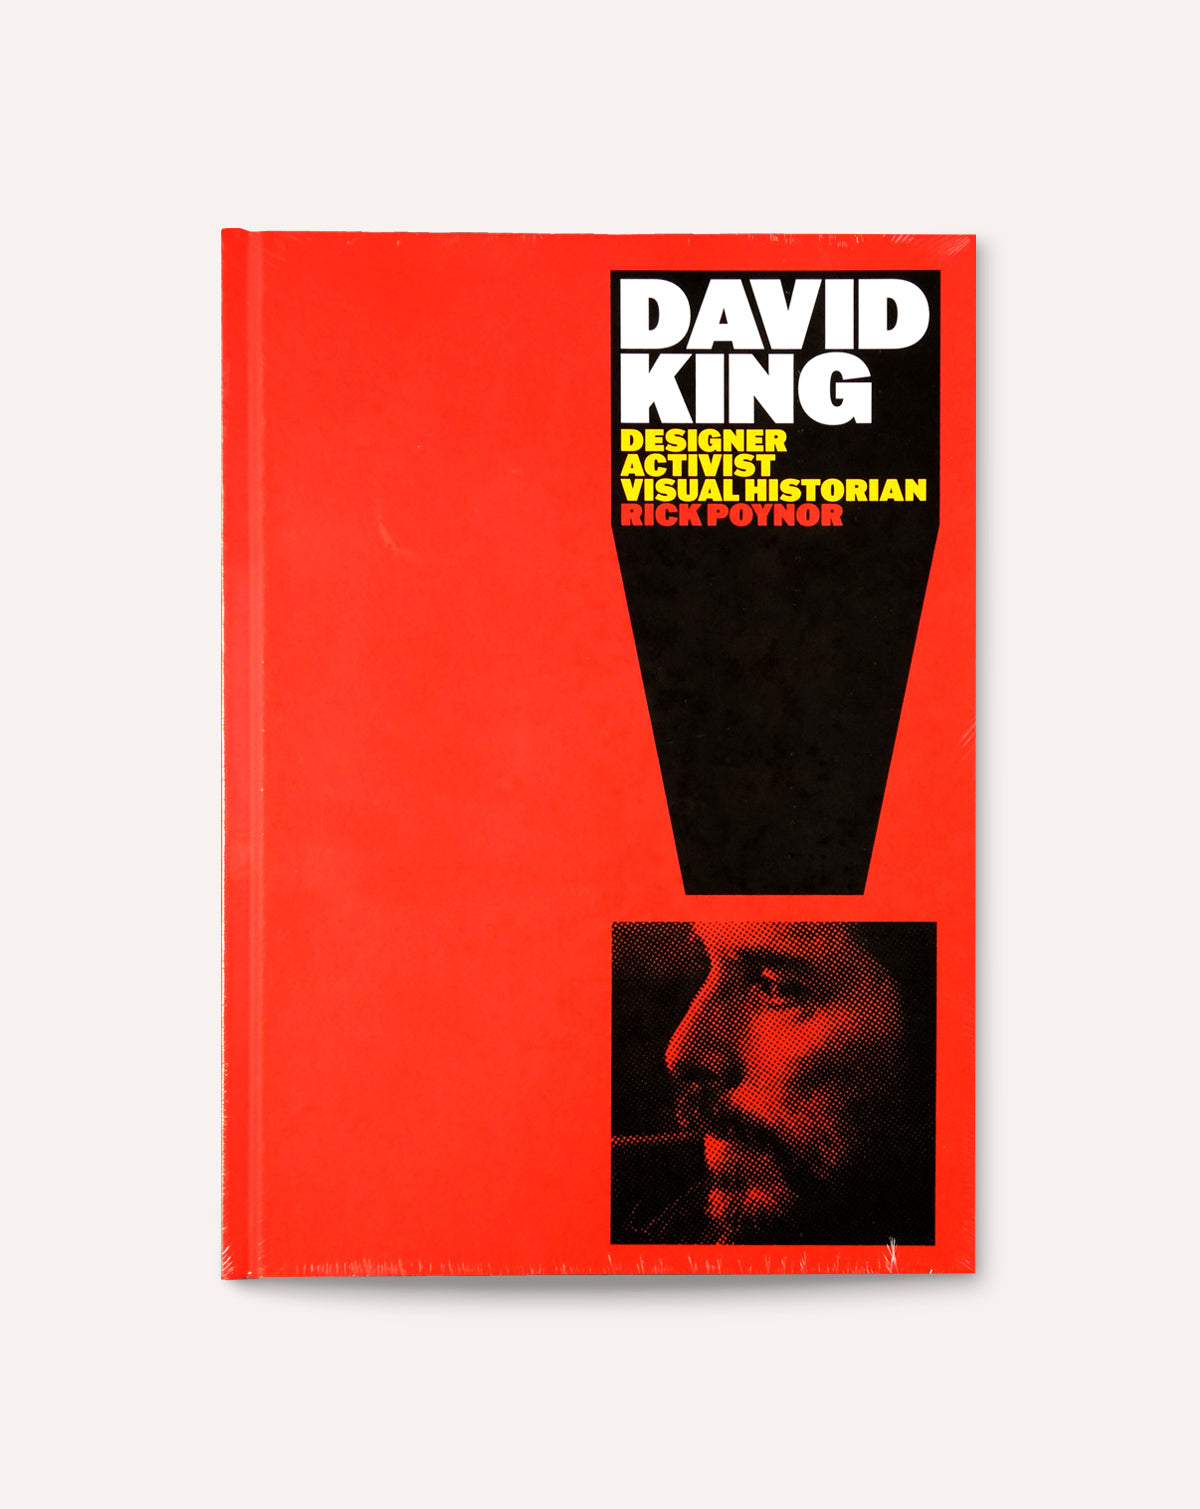 David King: Designer, Activist, Visual Historian